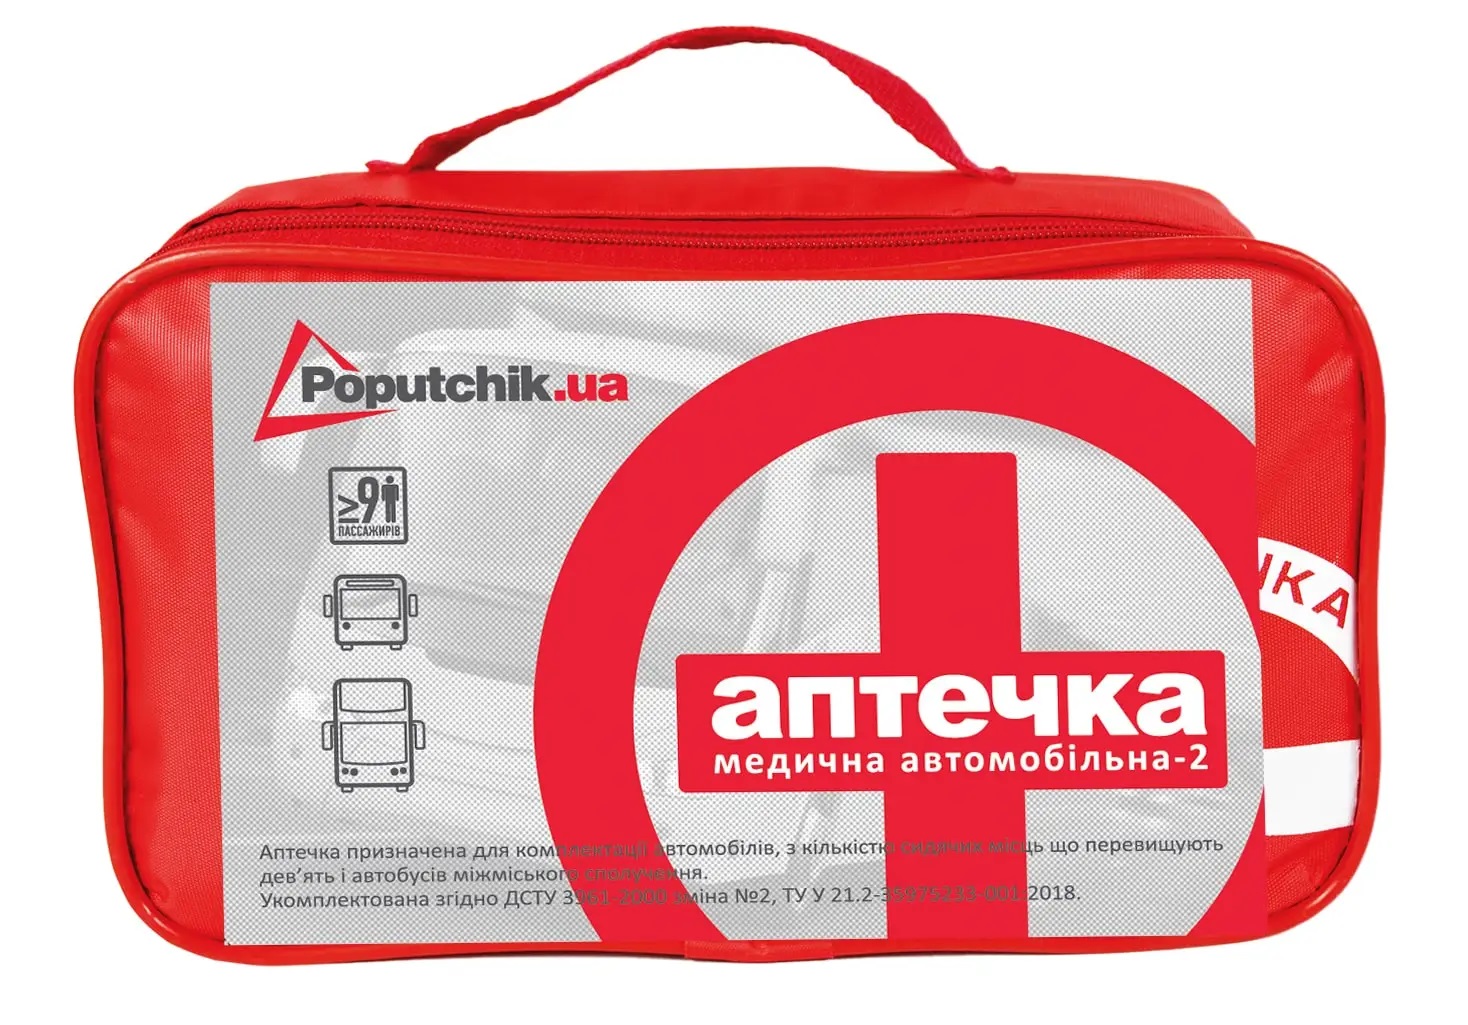 Автомобильная аптечка АМА 2 - Poputchik